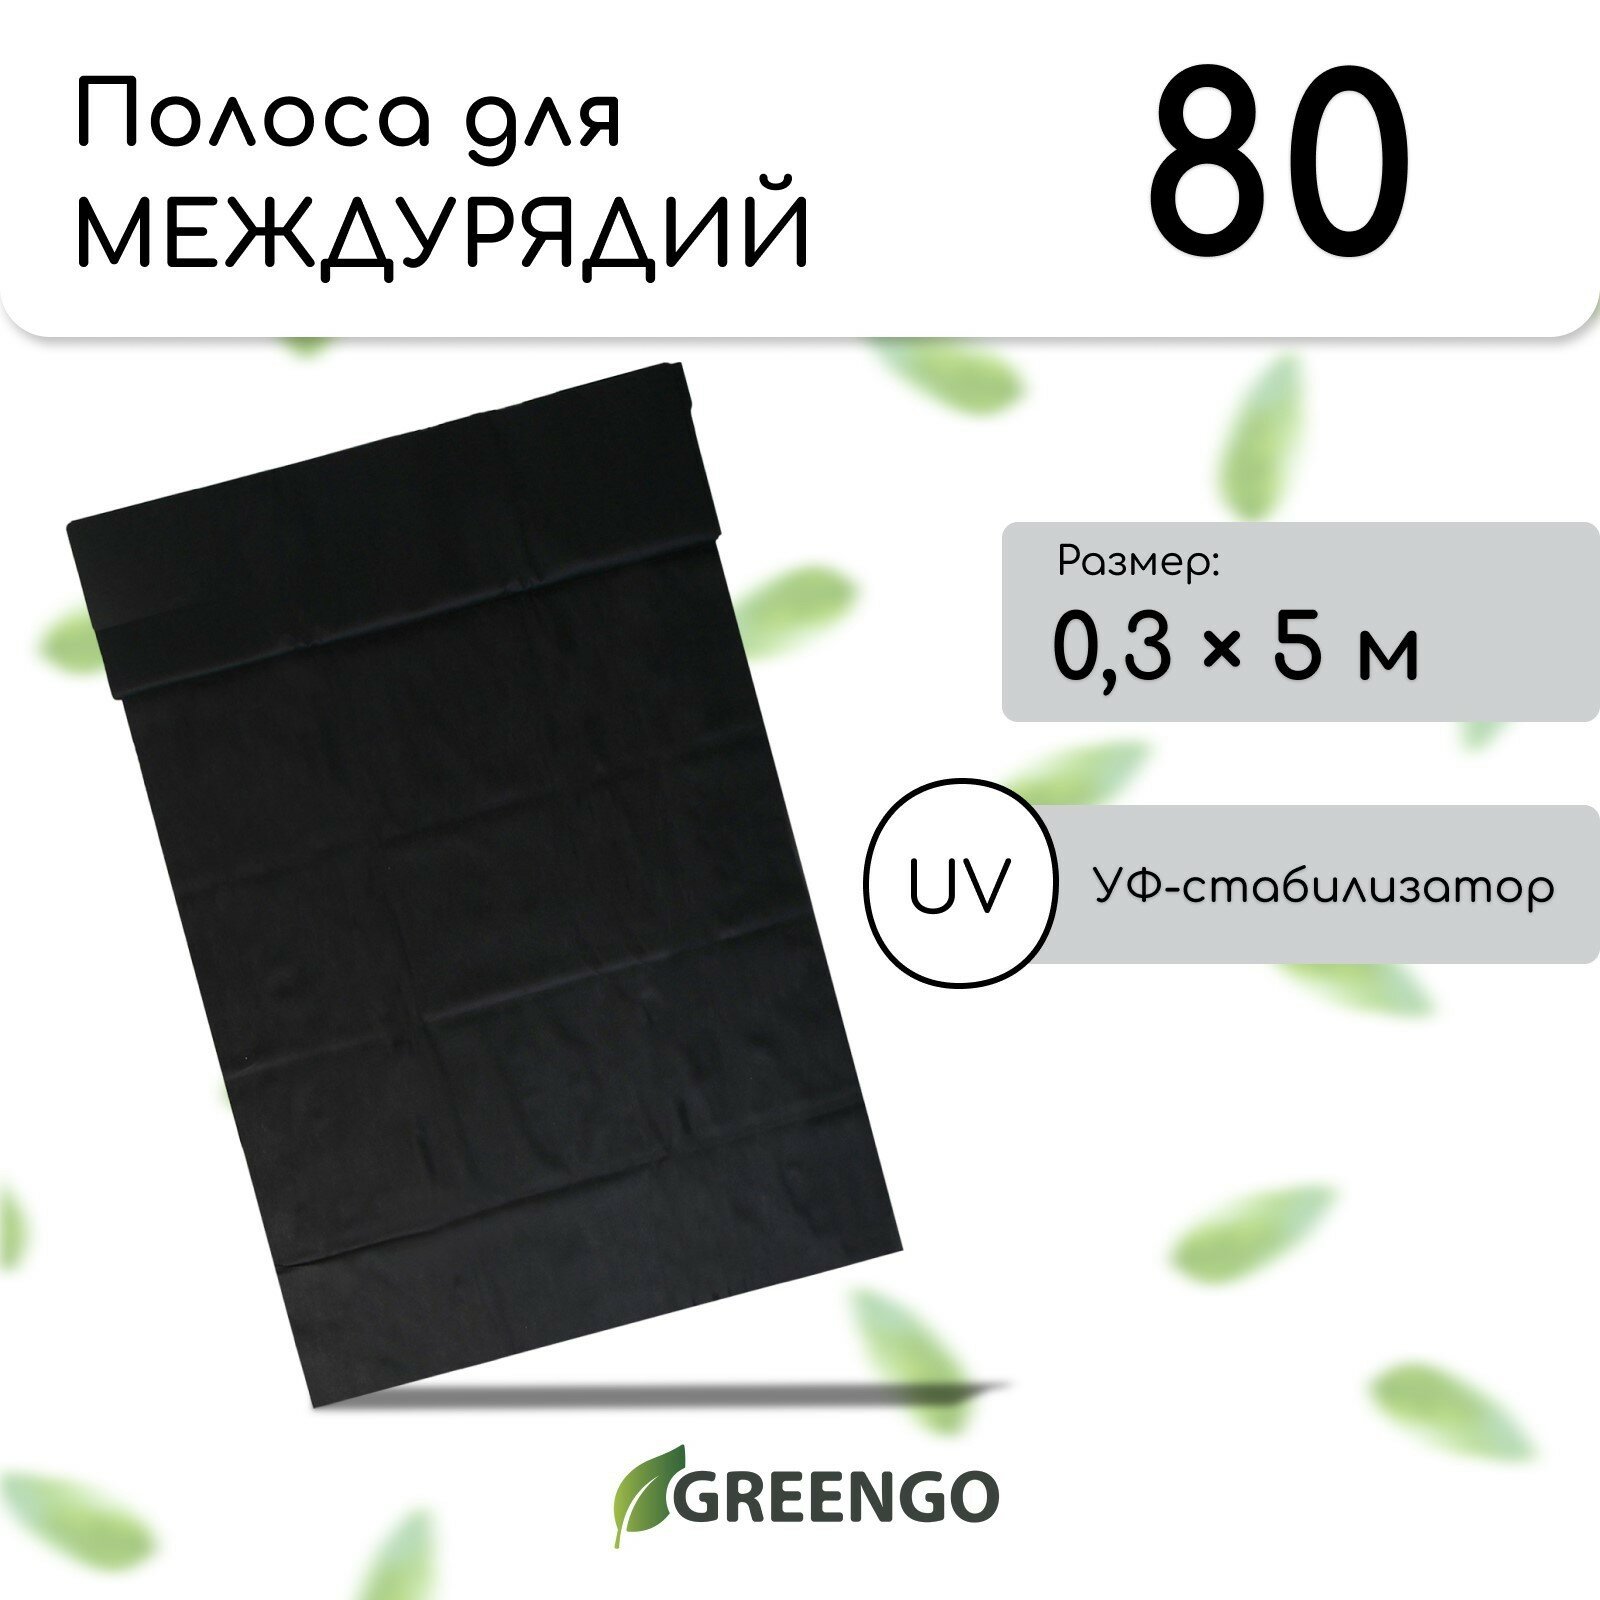 Полоса защитная для междурядий 5 × 03 плотность 80 г/м² спанбонд с УФ-стабилизатором чёрная Greengo Эконом 20%